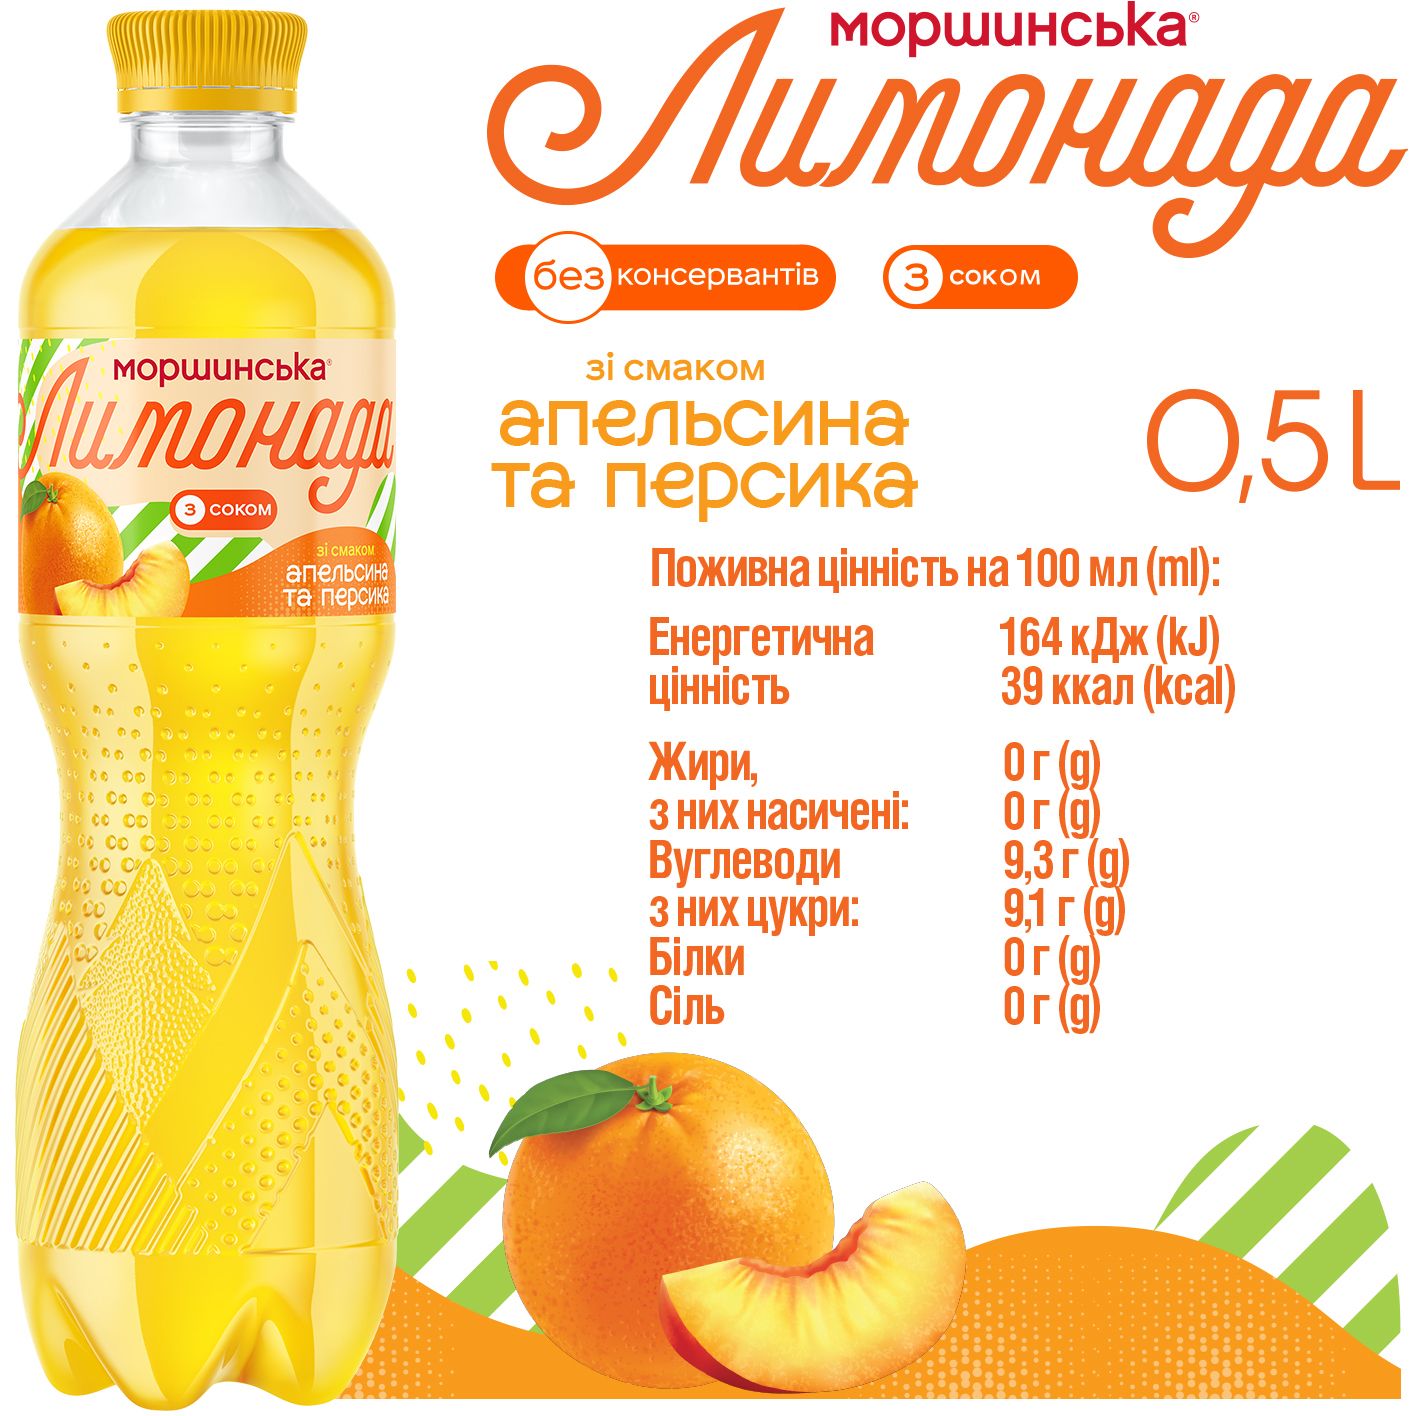 Напиток Моршинская Лимонада Апельсин-Персик среднегазированный 0.5 л - фото 5